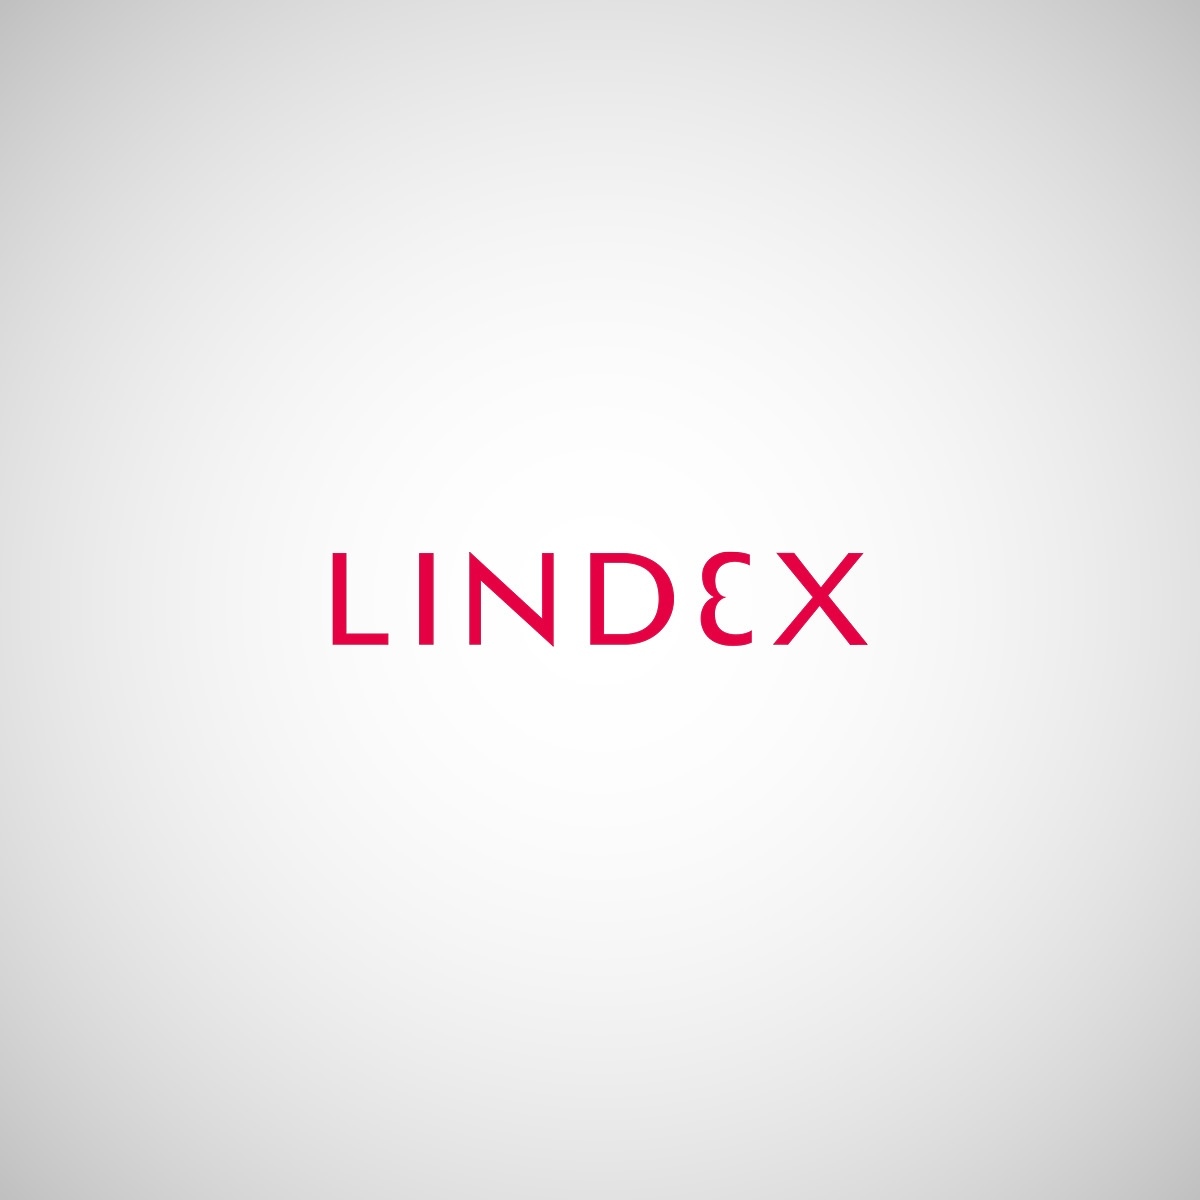 Lindex_1200x1200.jpg